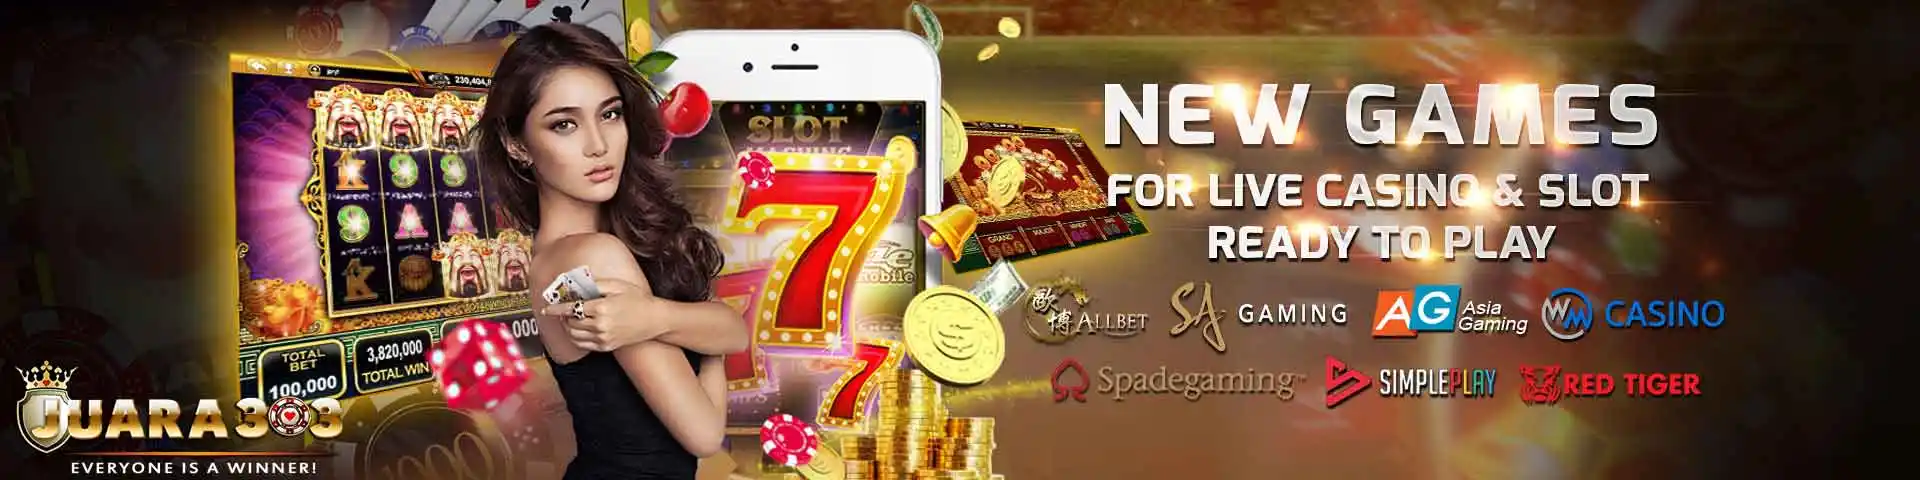 New Slot & Casino Games Dengan Promo Jockpot yang menarik dari Juara303